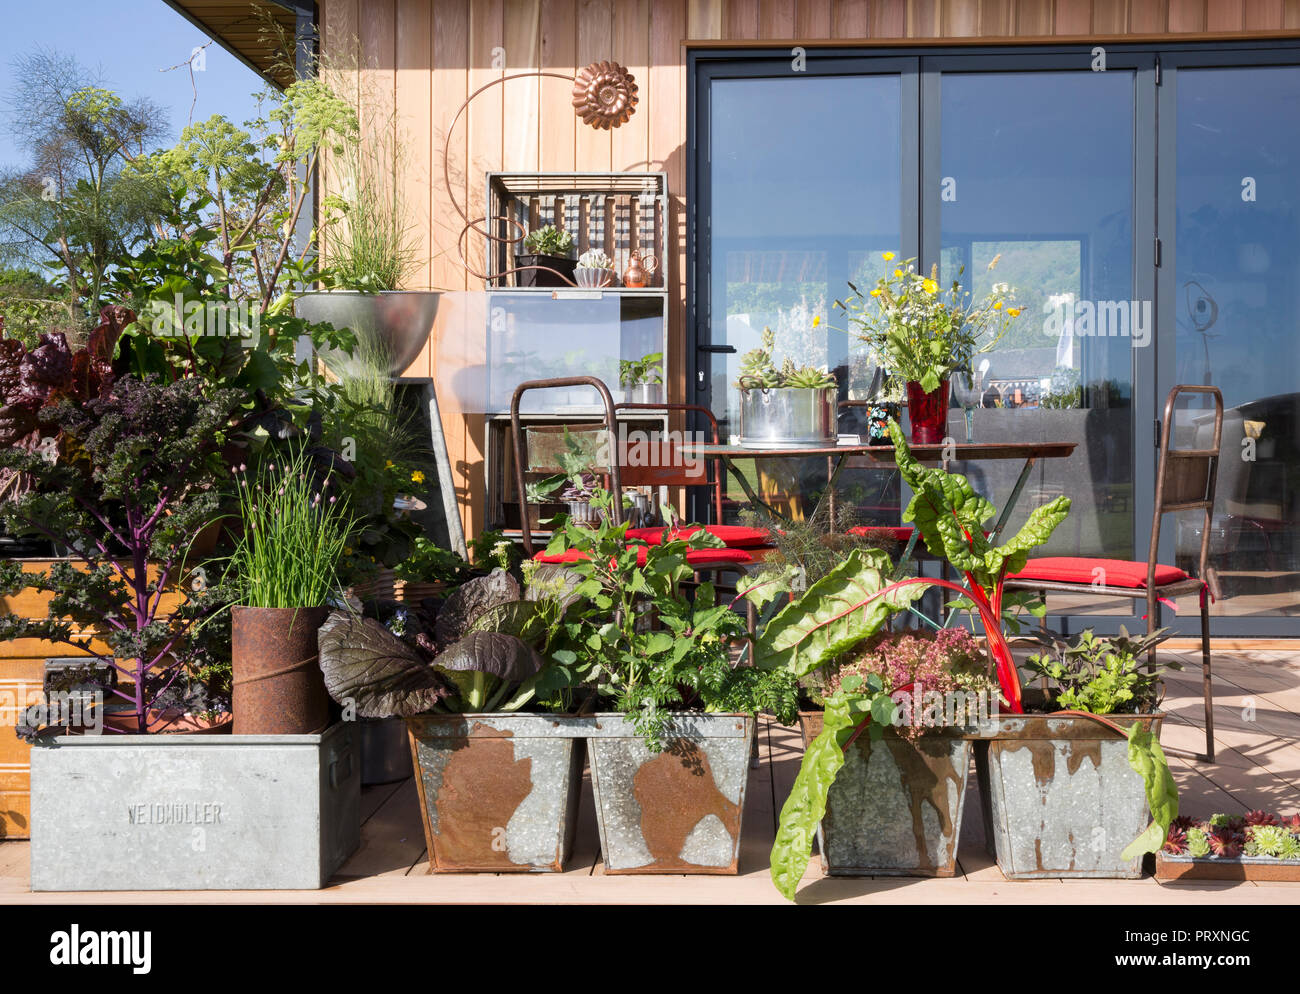 Arbeiten von zu Hause aus kleine Küche Garten Büroschuppen mit Terrassenbereich mit Gemüse Kräutern, die in wiederverwendeten recycelten Metallbehältern in Großbritannien angebaut werden Stockfoto